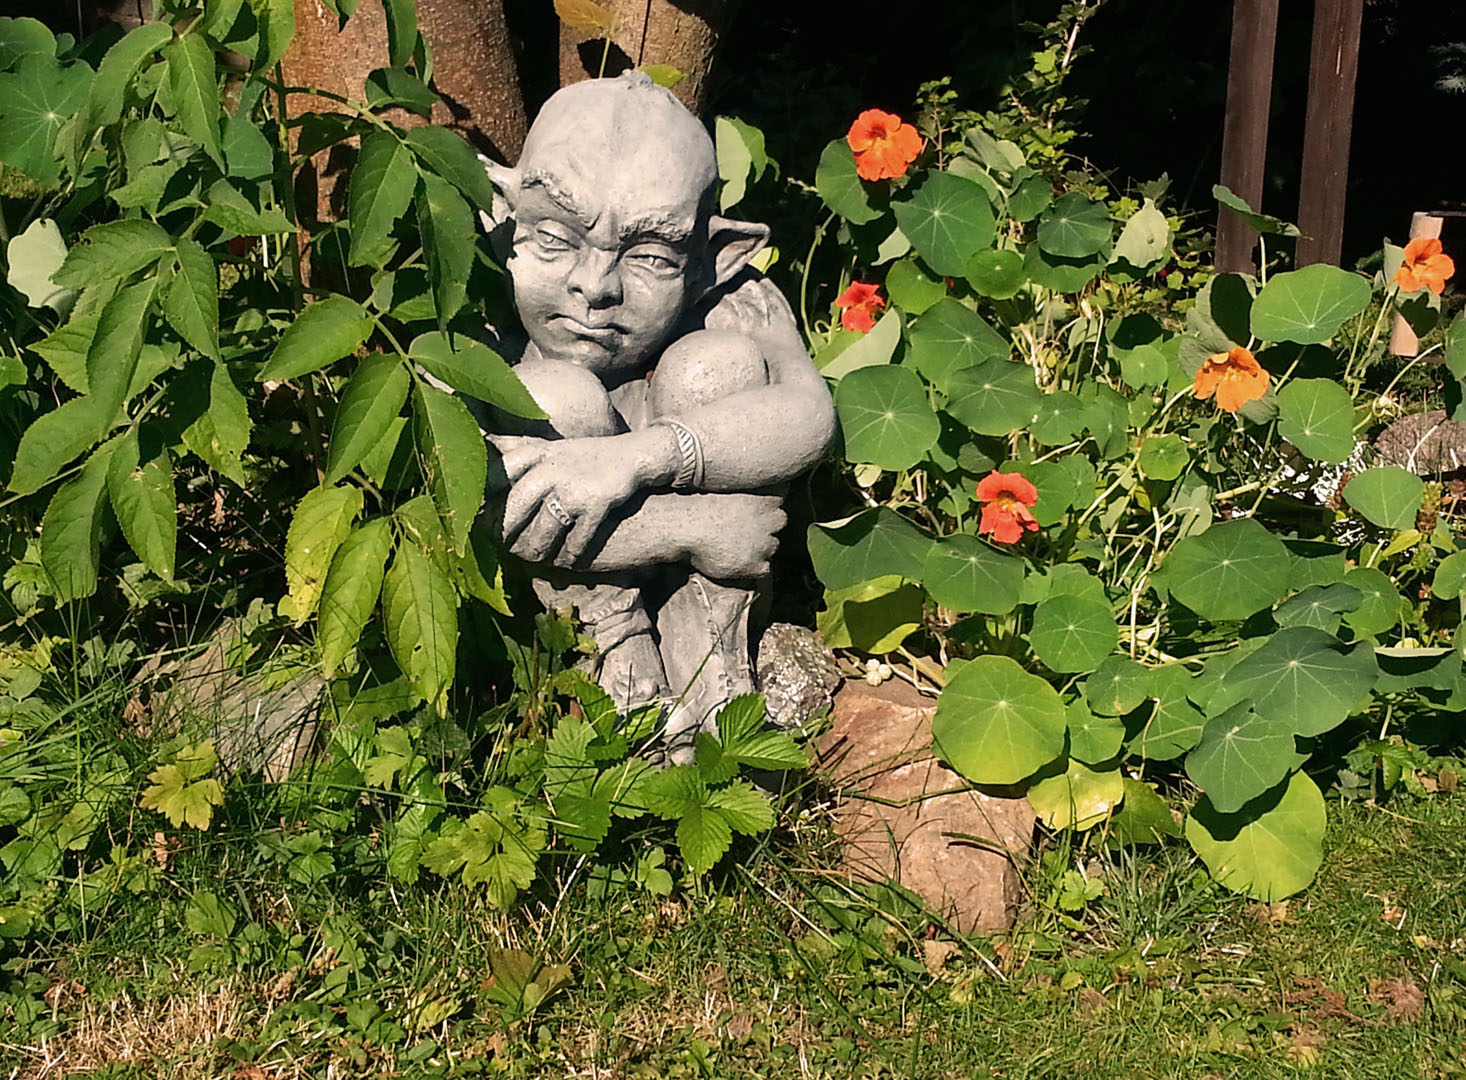 Gartenfigur zwischen Gartenpflanzen